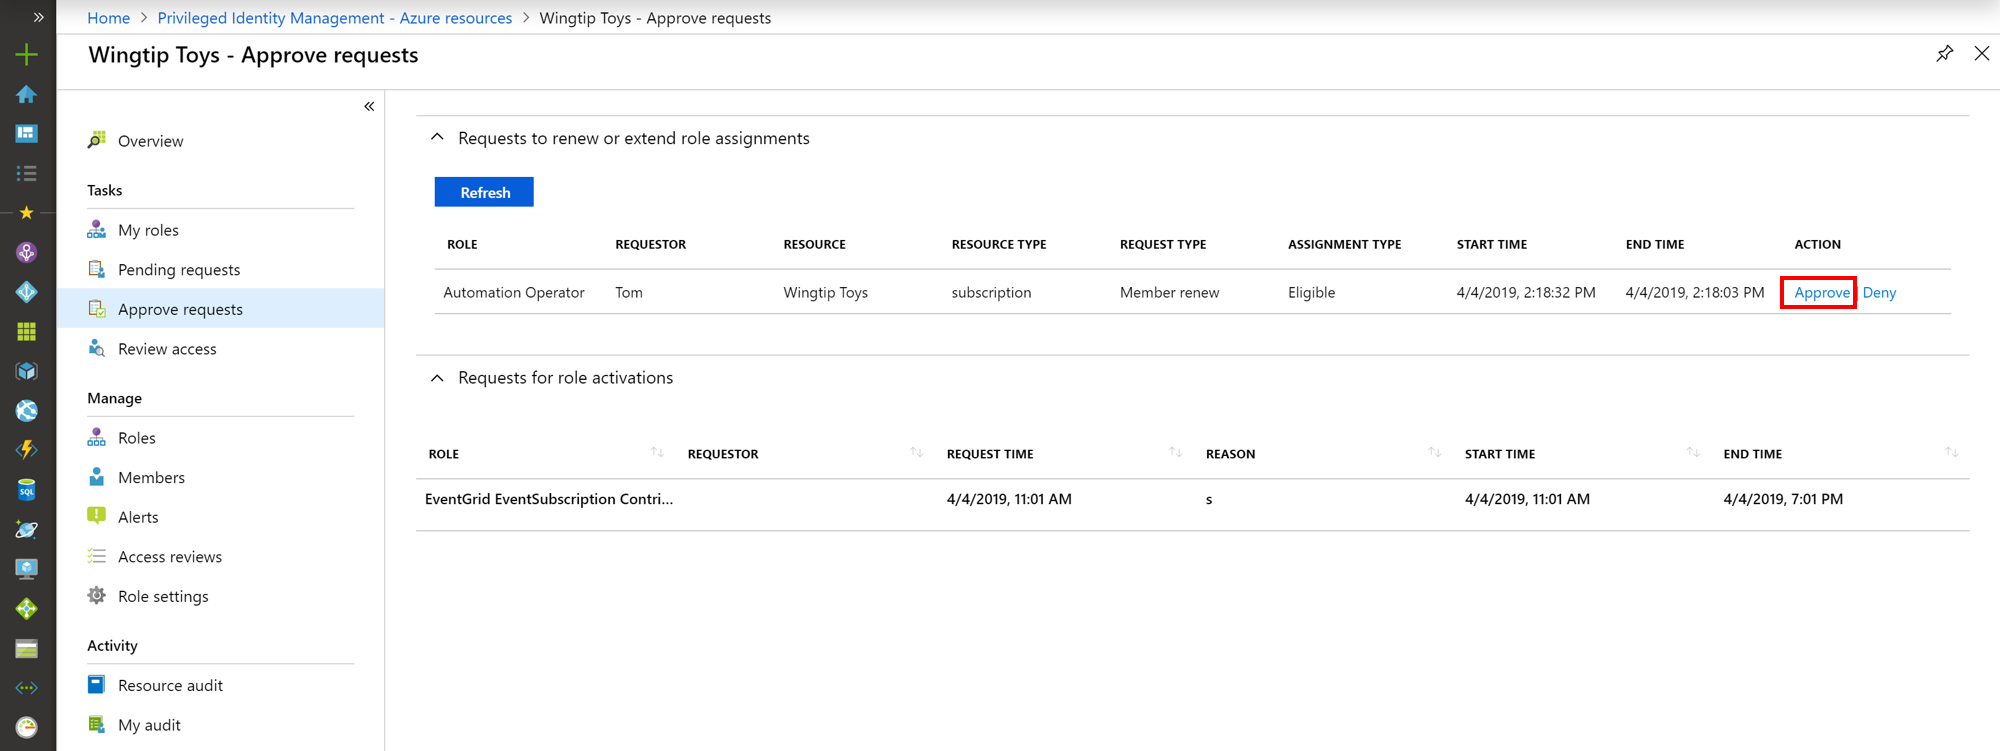 Captura de pantalla de los recursos de Azure: página de aprobación de solicitudes que muestra solicitudes y vínculos para aprobar o denegar.